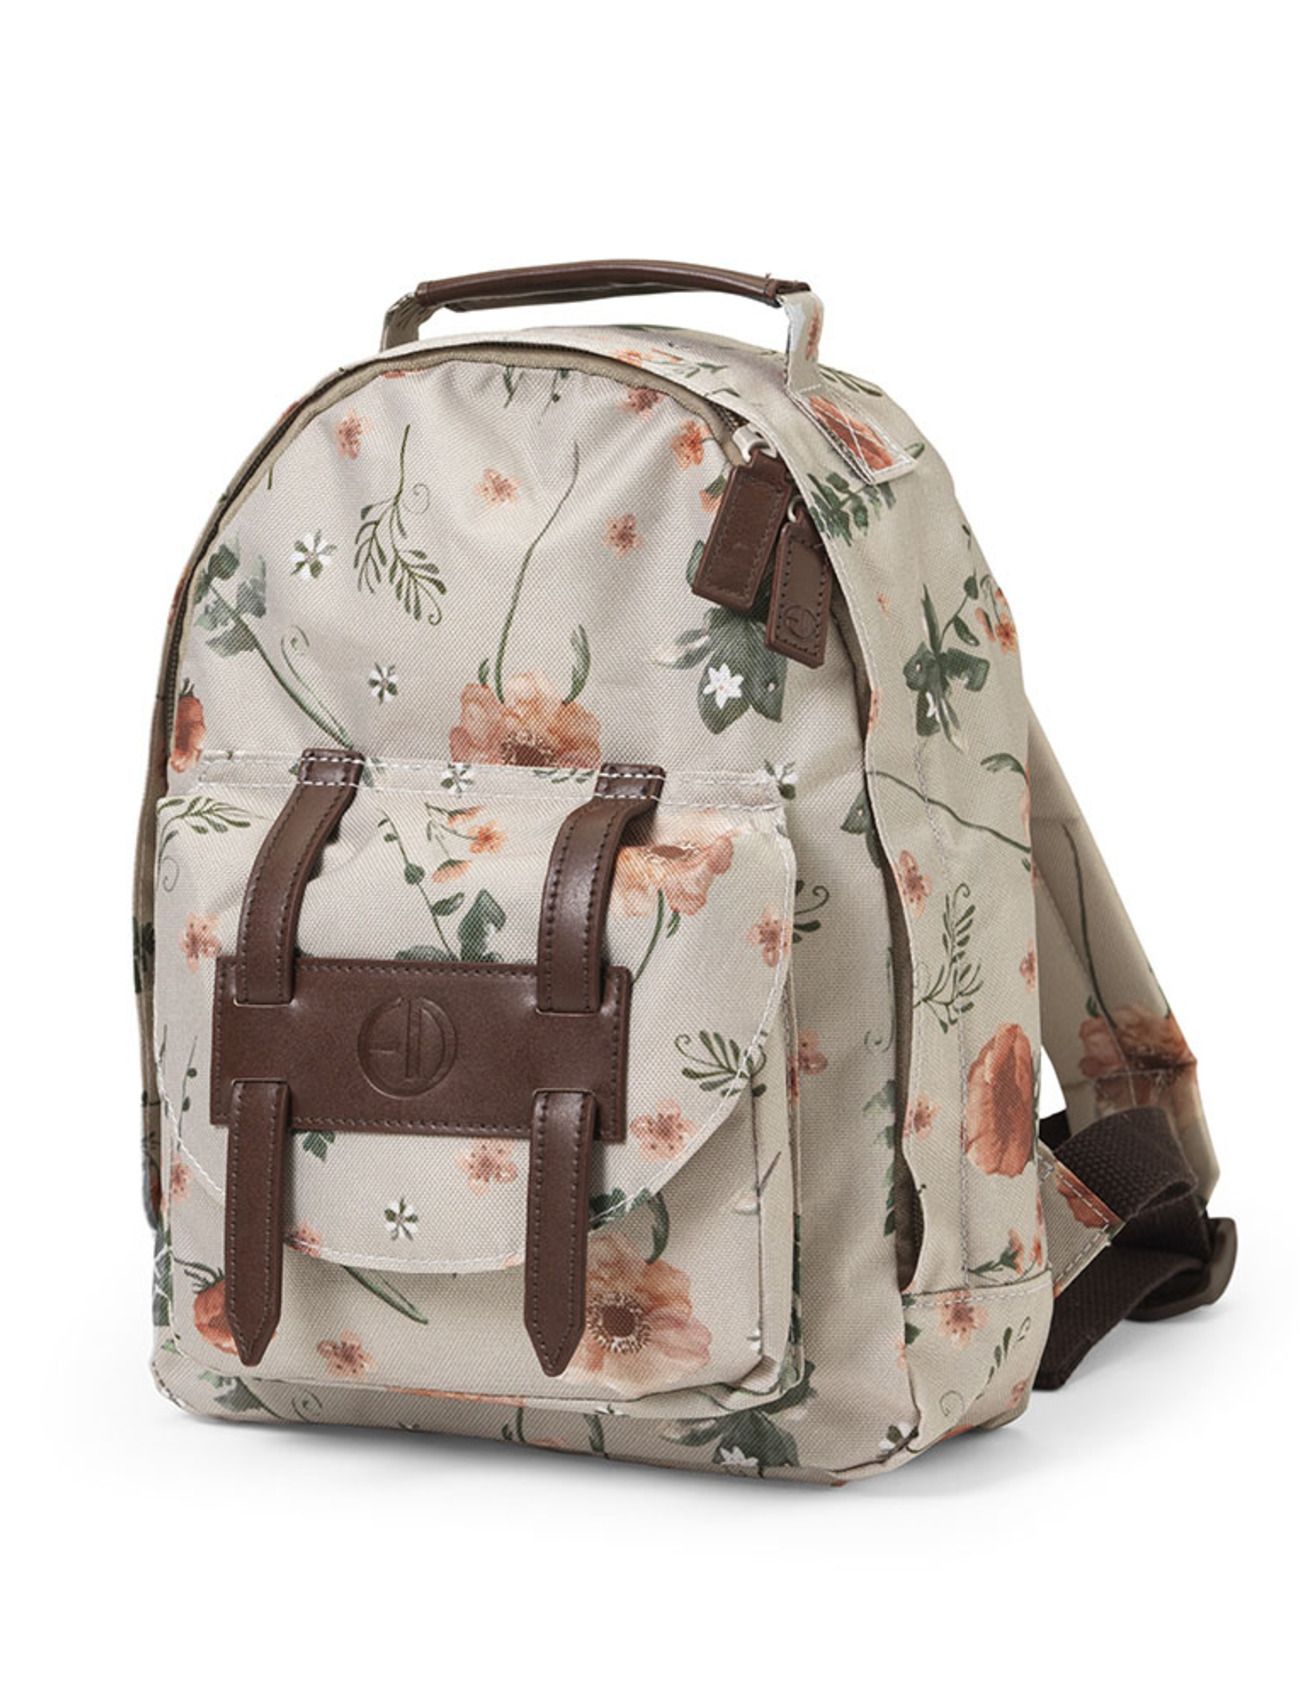 Backpack Mini - Meadow Blossom Ryggsäck Väska Multi/patterned Elodie Details